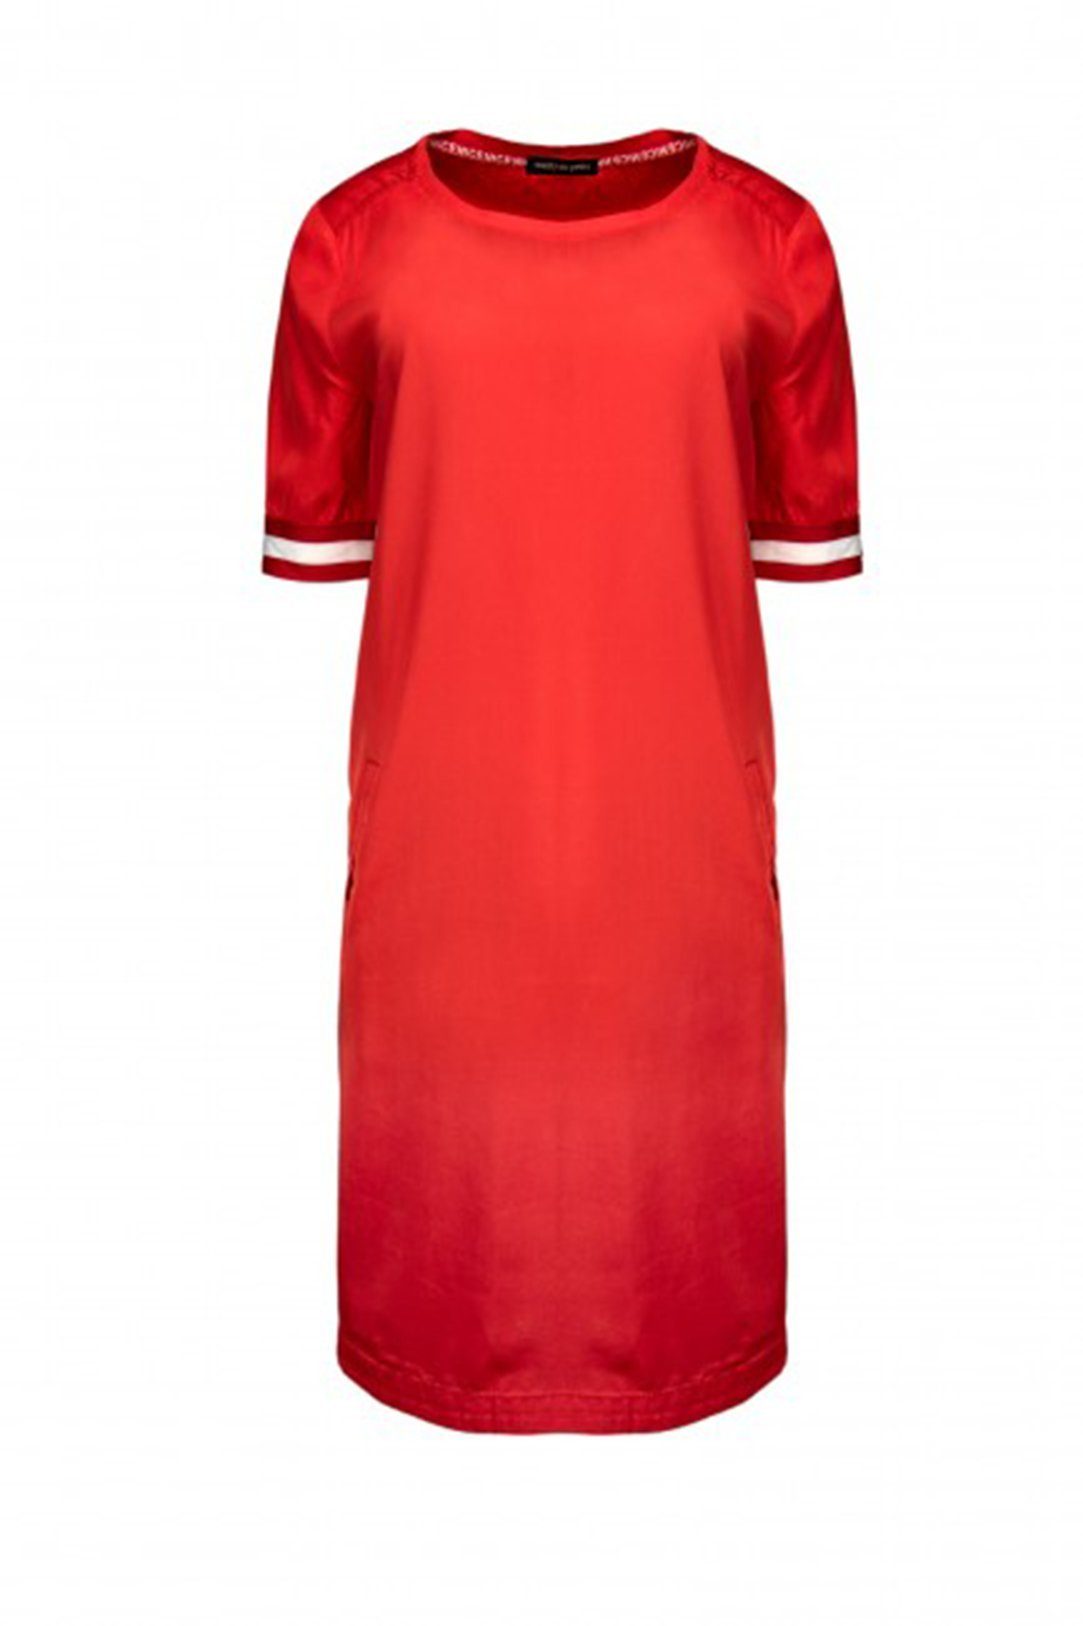 twenty six peers Sommerkleid »Twenty Six Peers Kleid casual rot - Fair Trade,  Kleid, Damenmode« online kaufen | OTTO